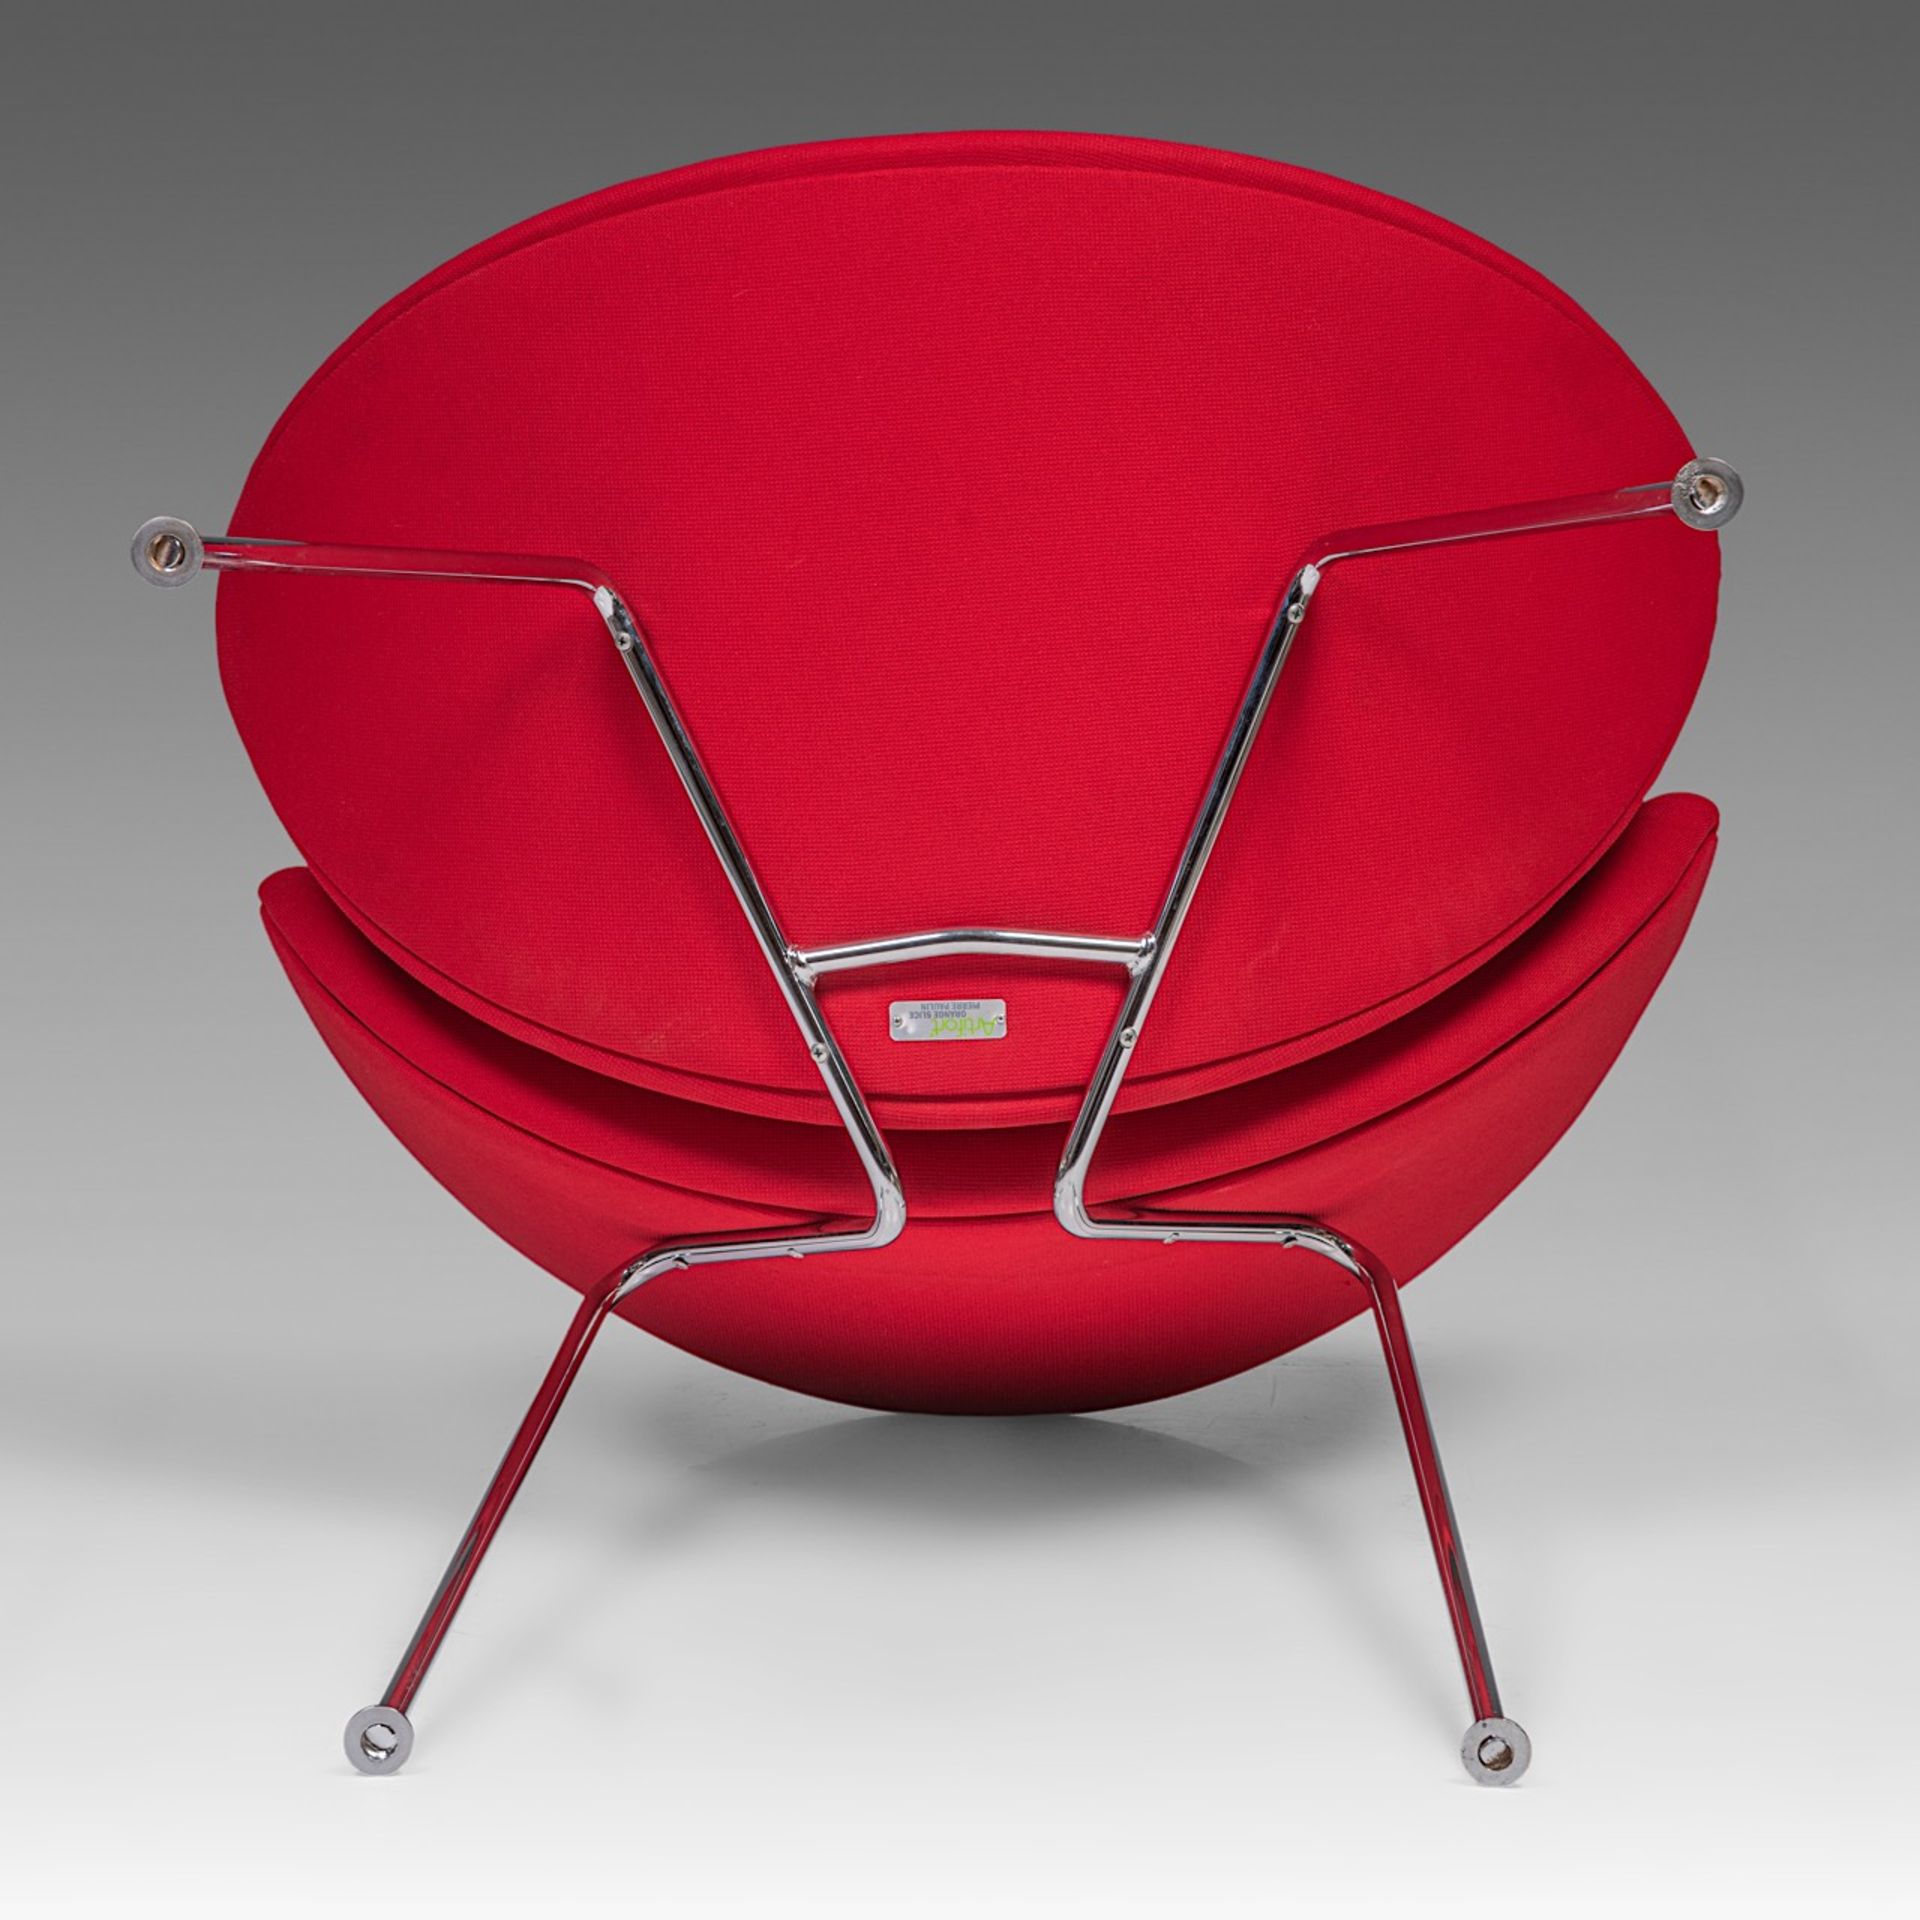 An Orange Slice chair by Pierre Pauline for Artifort, H 85 - W 82 cm - Bild 8 aus 9